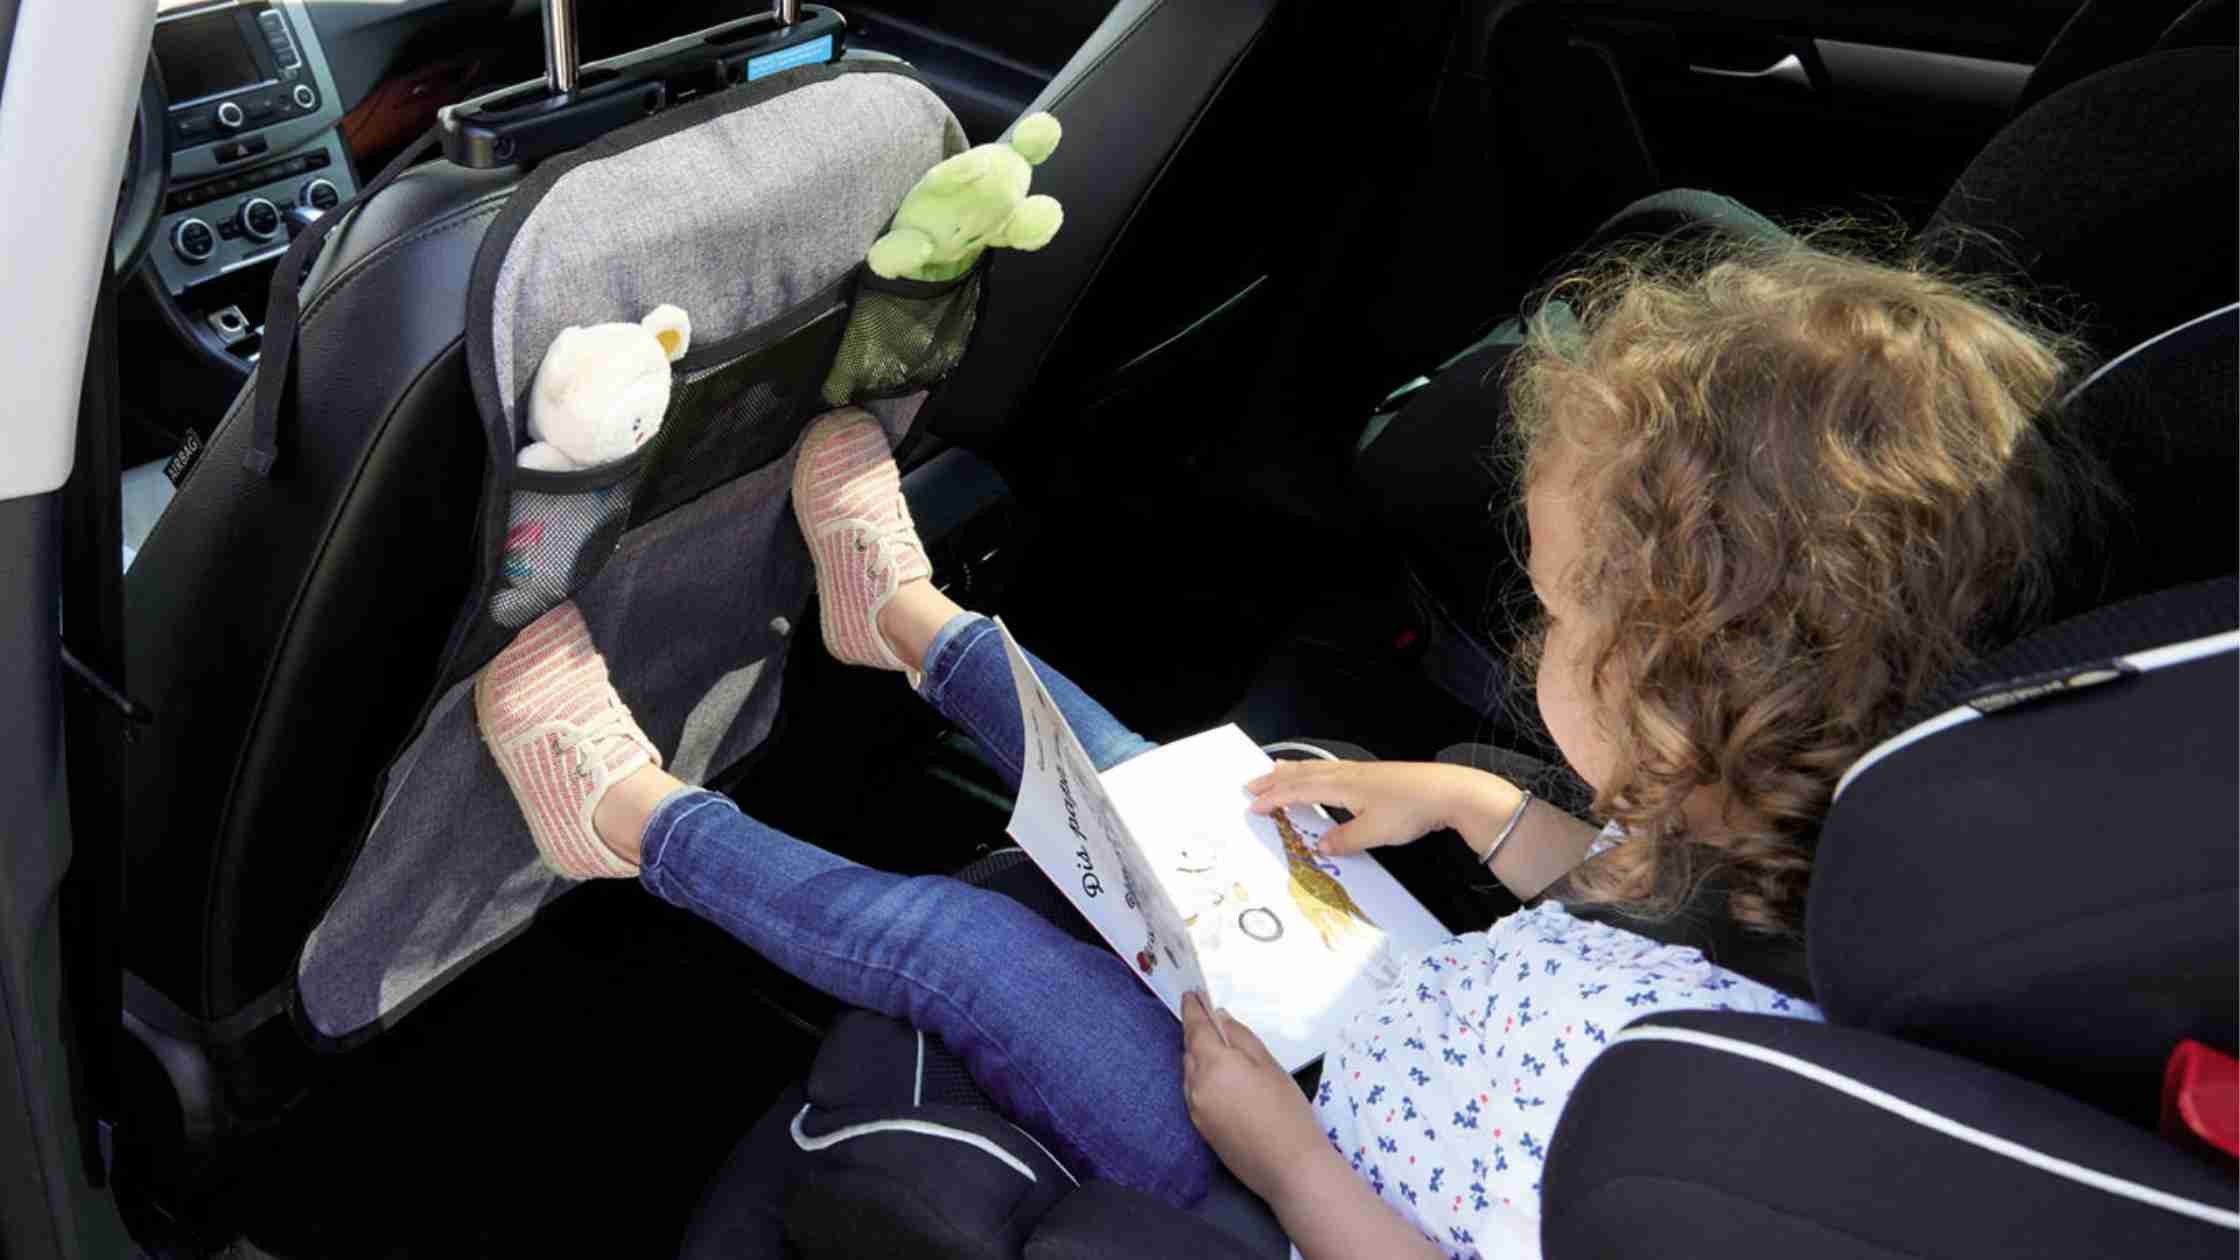 Rétroviseur sur appuie-tête pour bébé : sécurité enfant en voiture